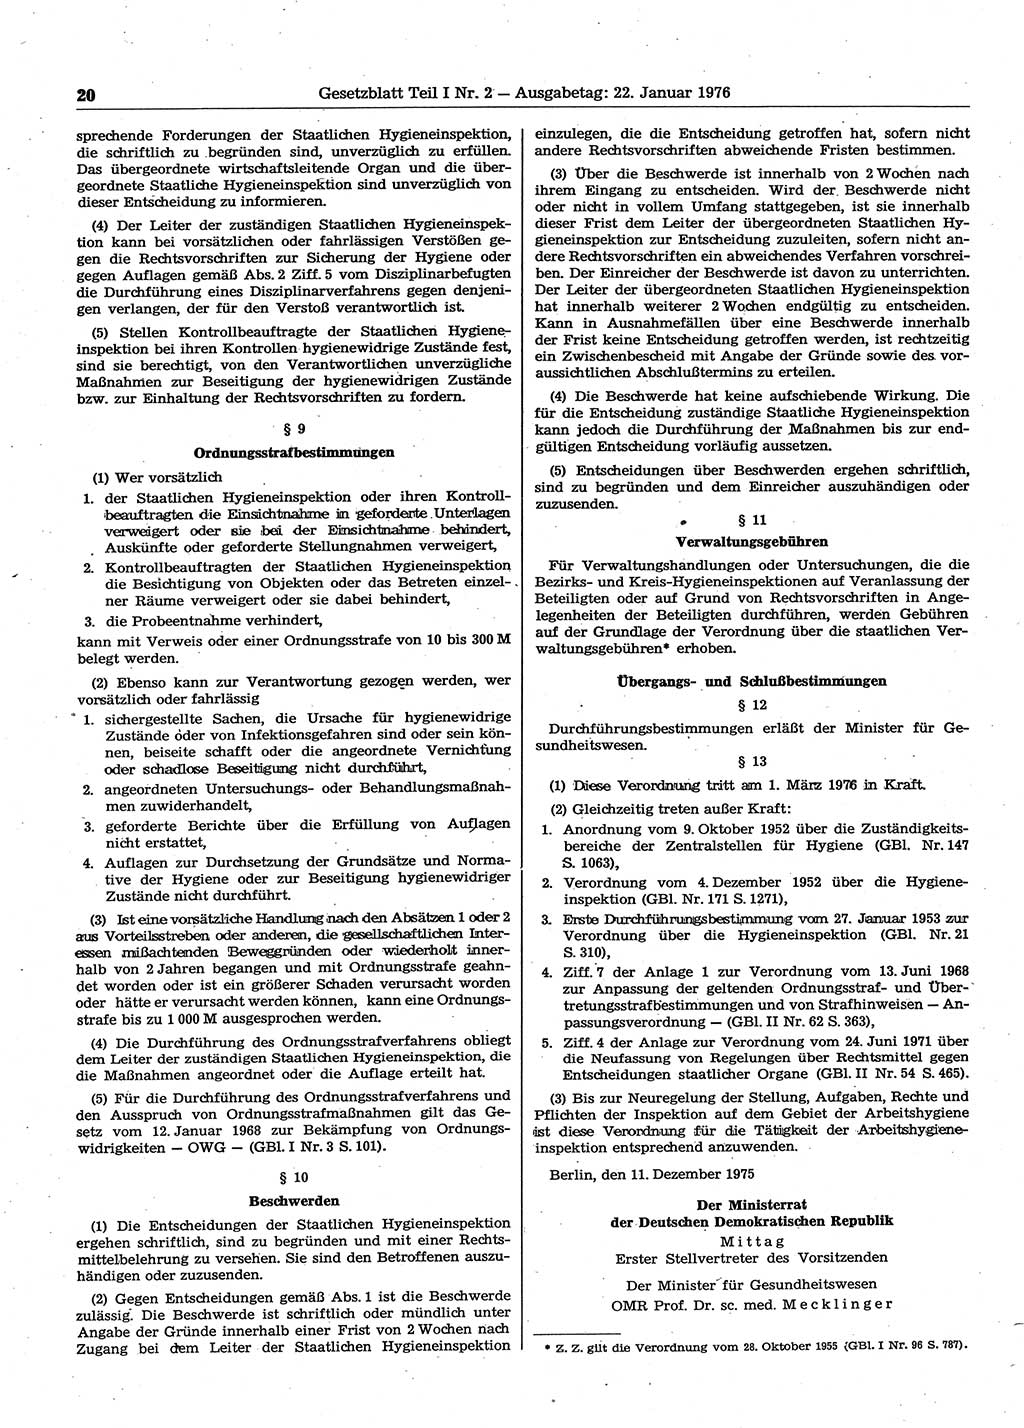 Gesetzblatt (GBl.) der Deutschen Demokratischen Republik (DDR) Teil Ⅰ 1976, Seite 20 (GBl. DDR Ⅰ 1976, S. 20)